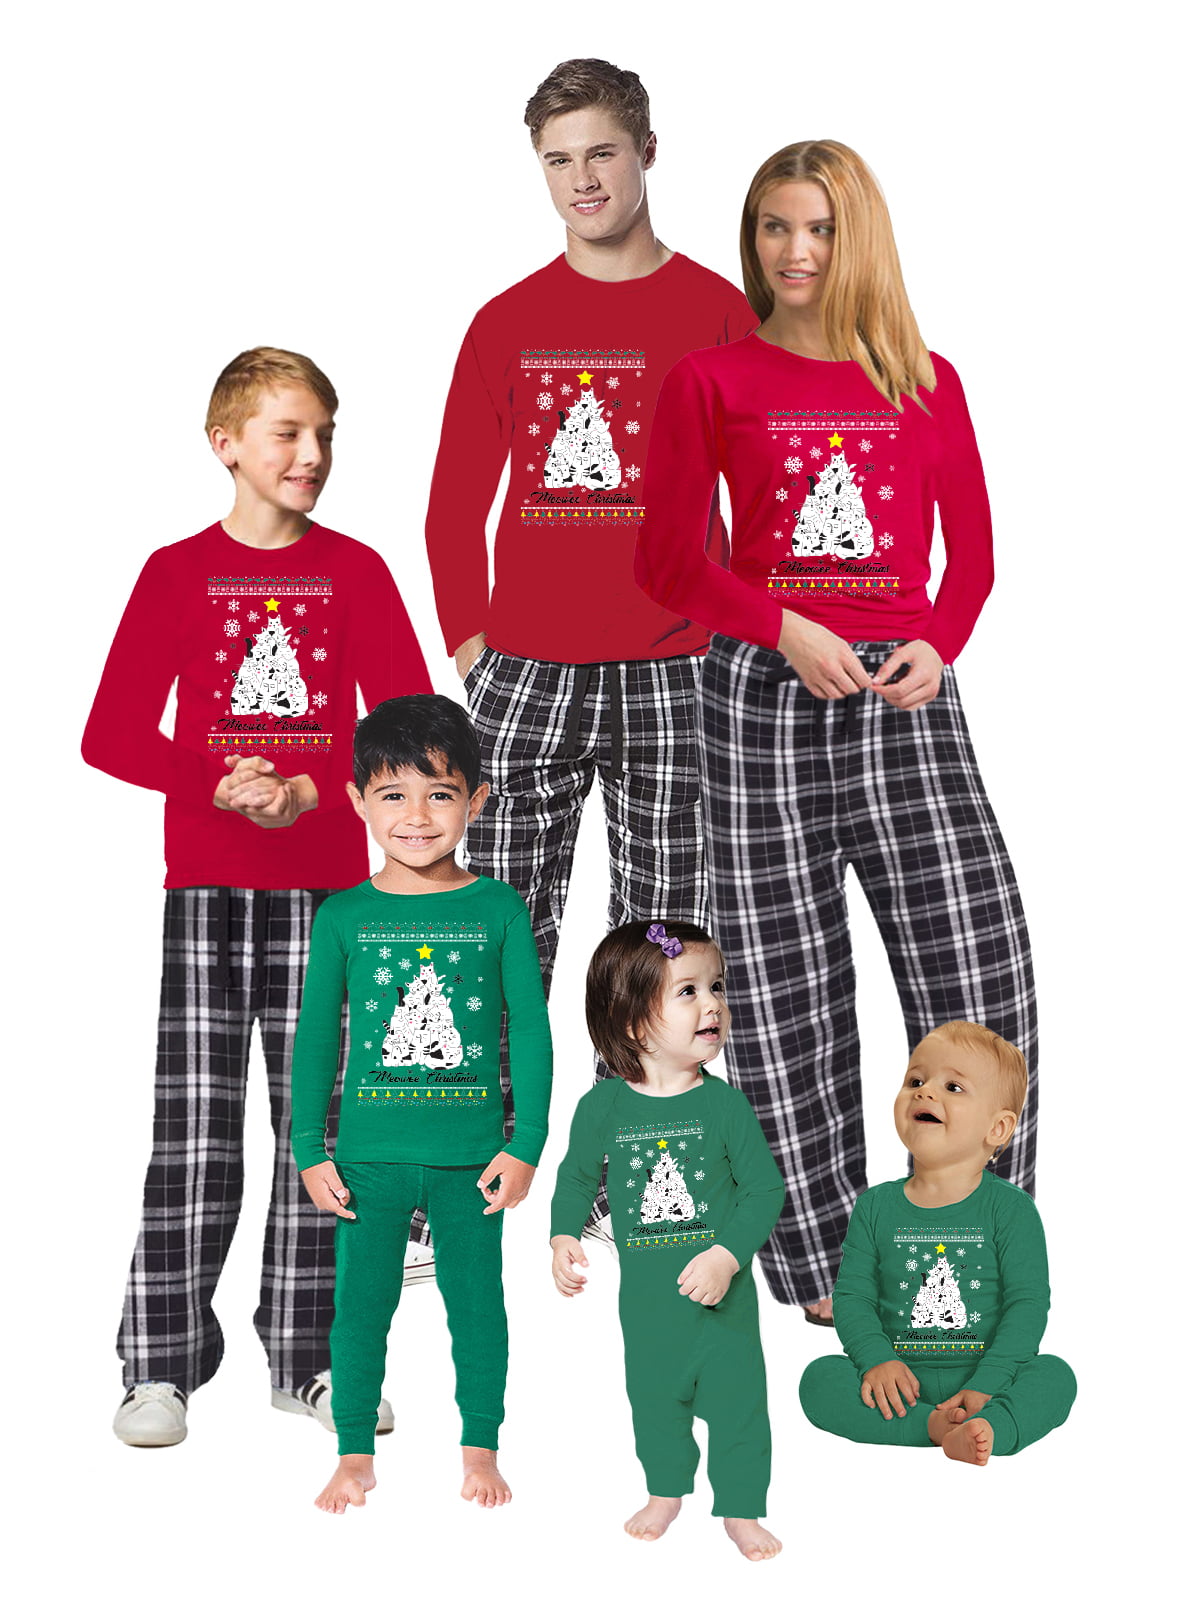 Awkward Styles Christmas Pajamas for Family Meowee Xmas Matching ...